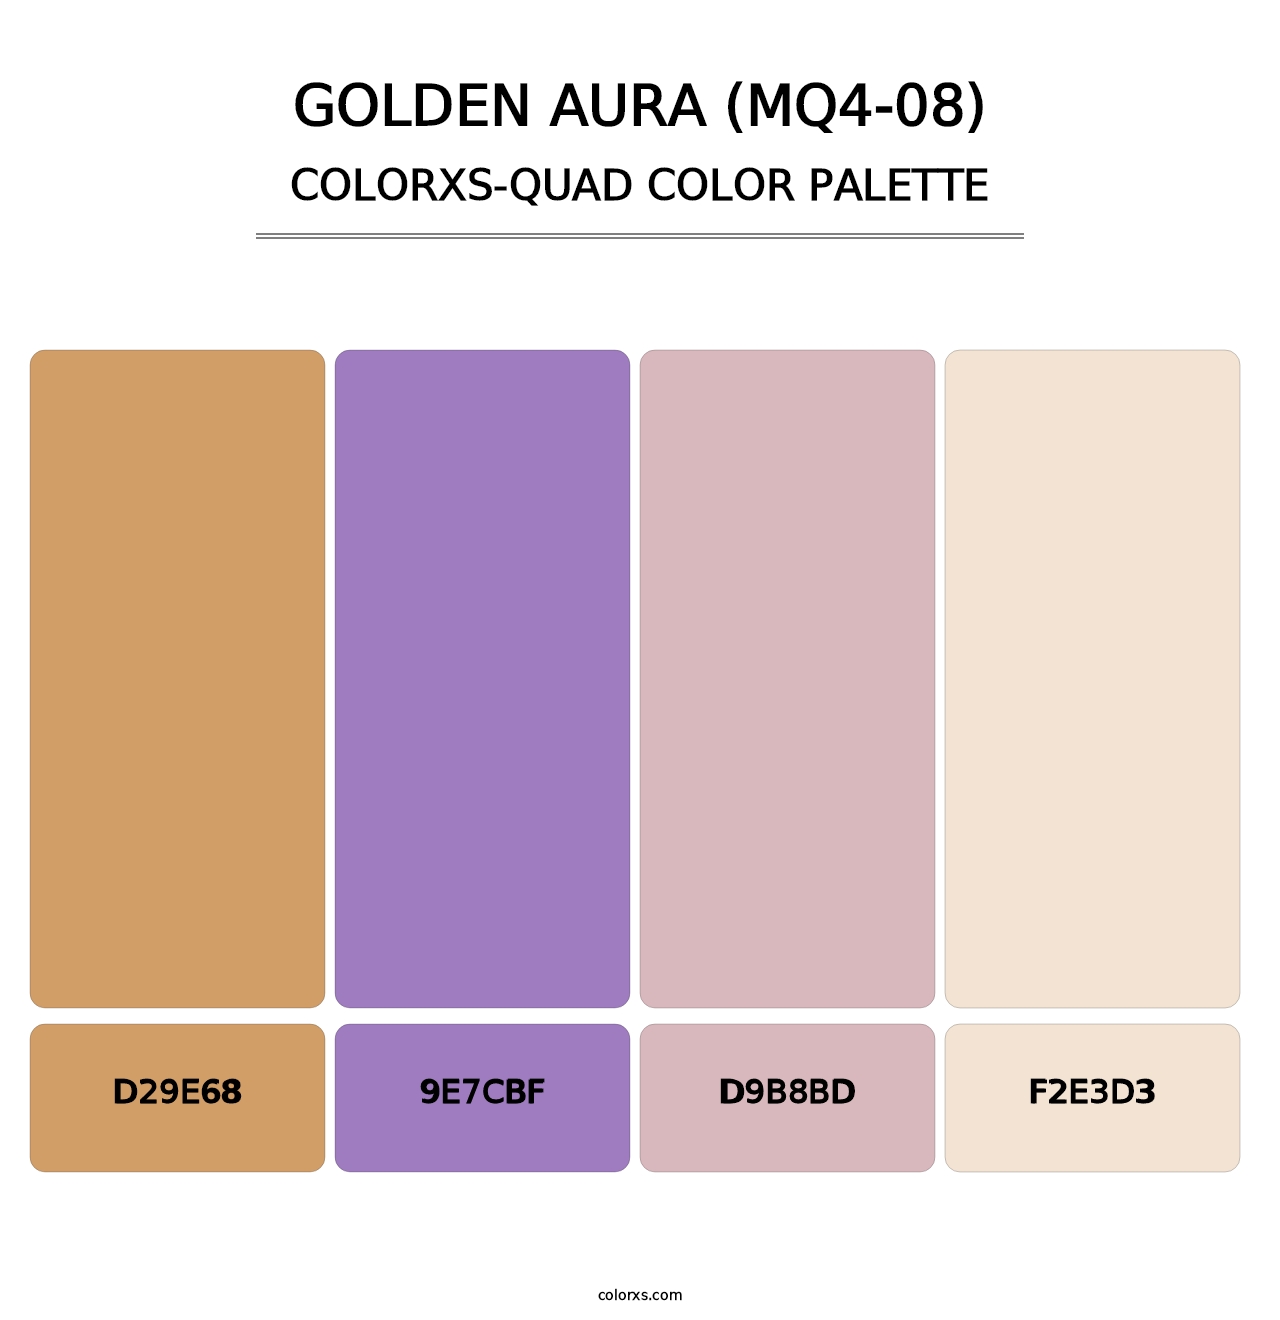 Golden Aura (MQ4-08) - Colorxs Quad Palette